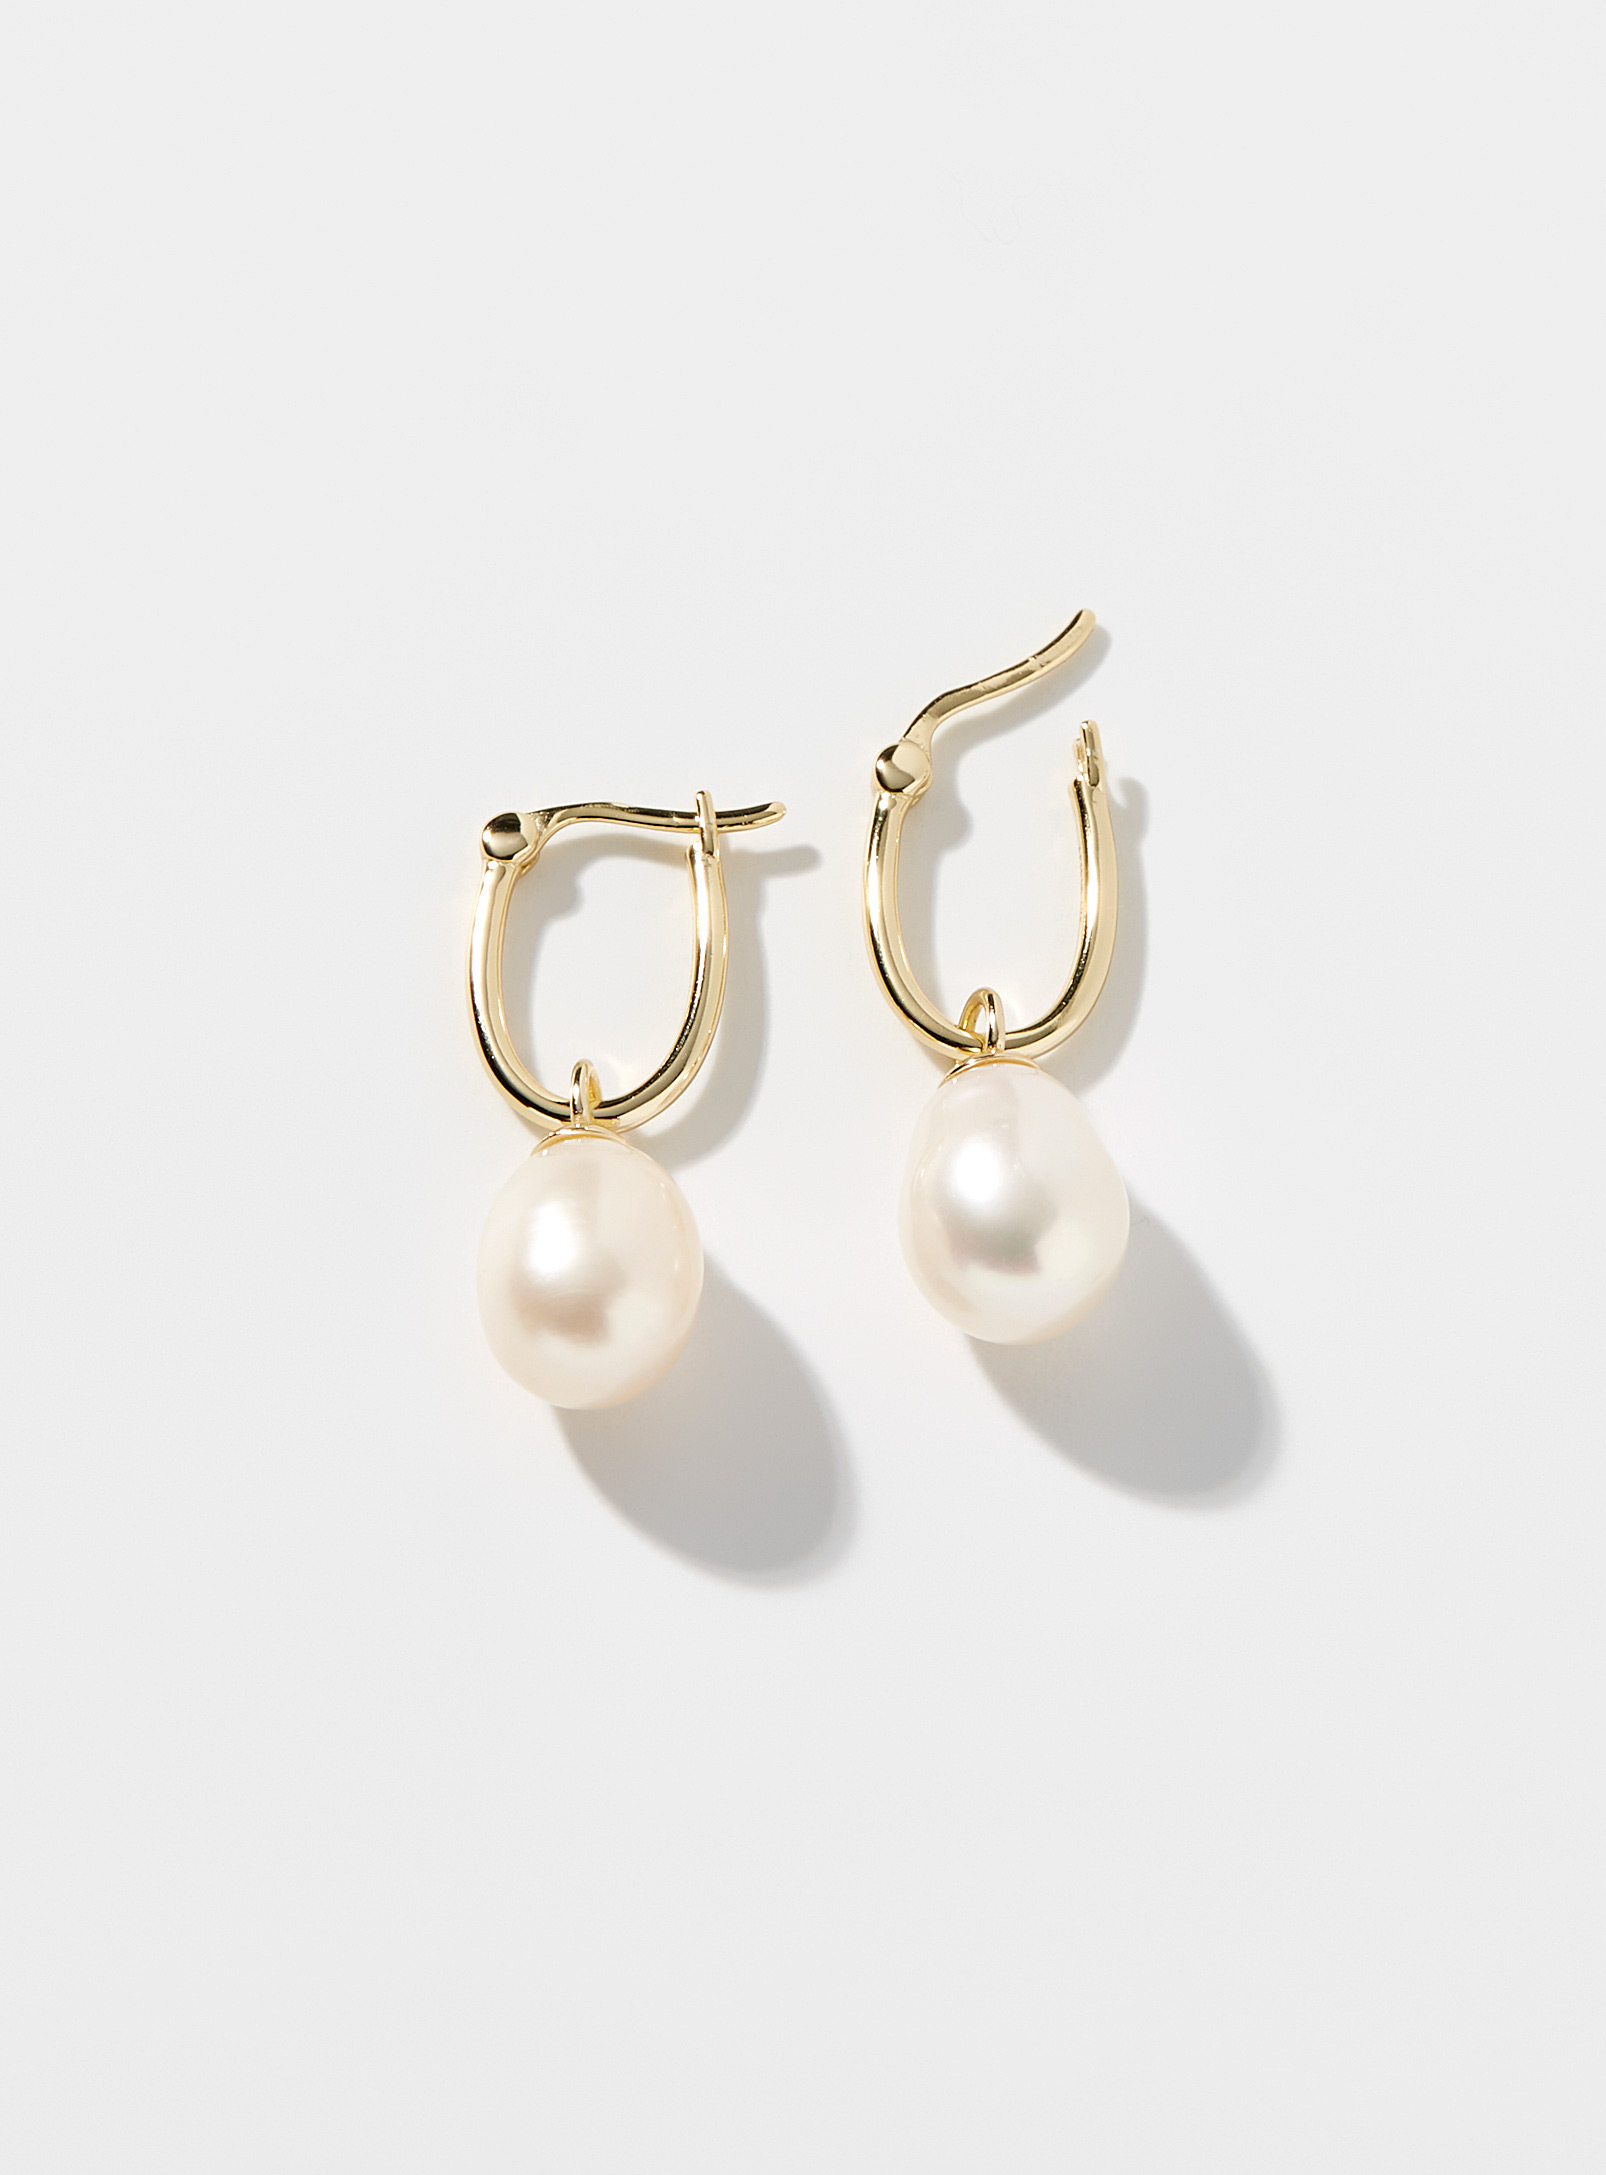 Midi34 x Simons - Women's Azelie earrings